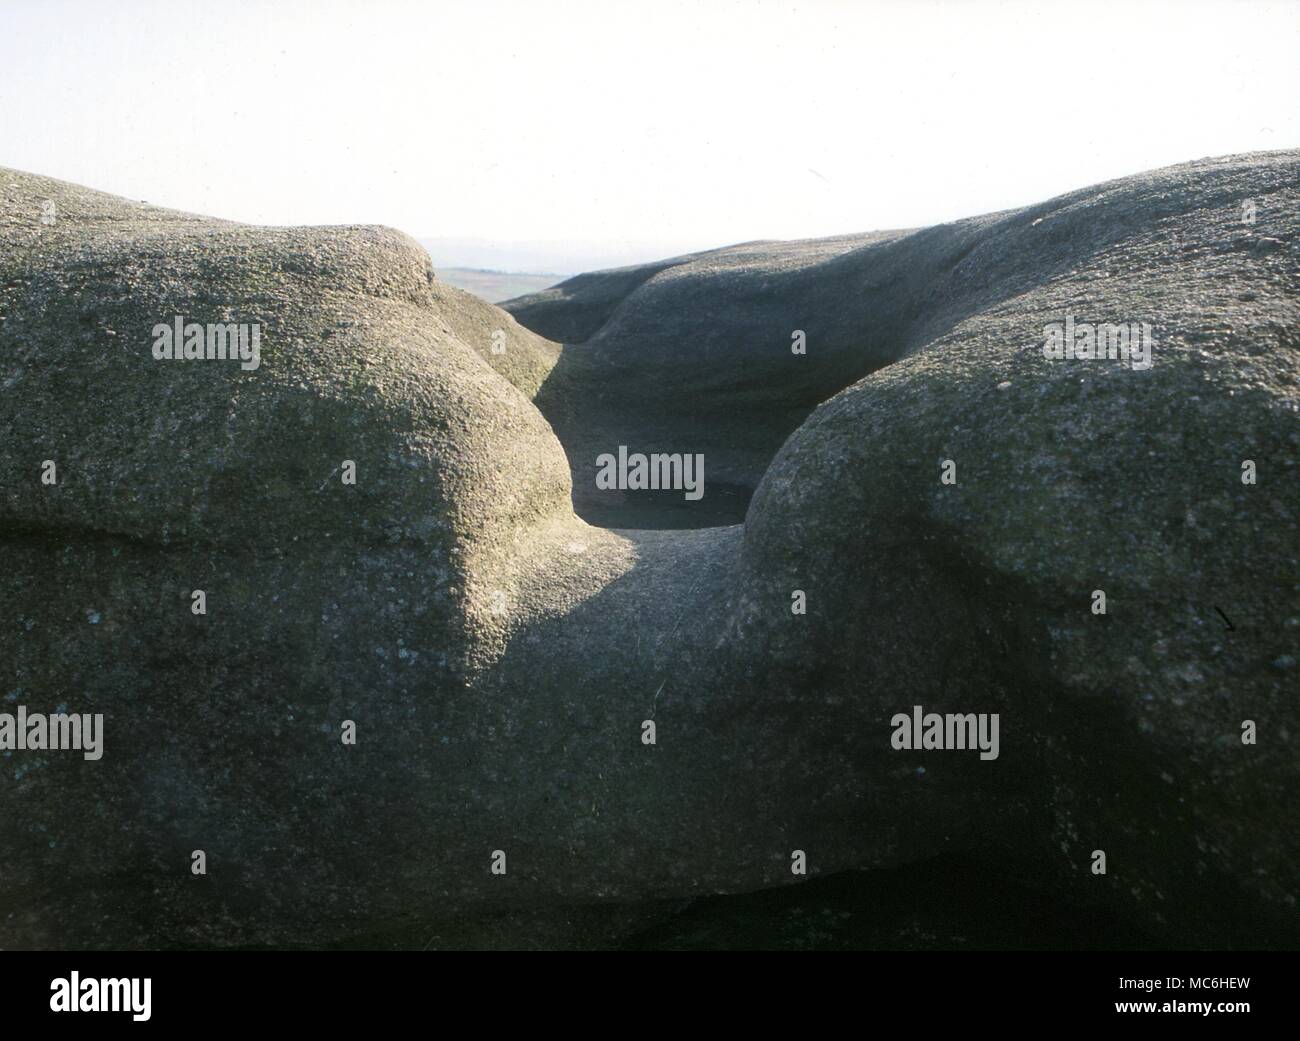 Ley linee. Il duplicatore pietre sulla Ilkley Moor, Yorkshire. Queste pietre sono state un luogo sacro in epoca preistorica e parte di un esteso ley. L'uomo ha fatto foro per l'acqua. Foto Stock